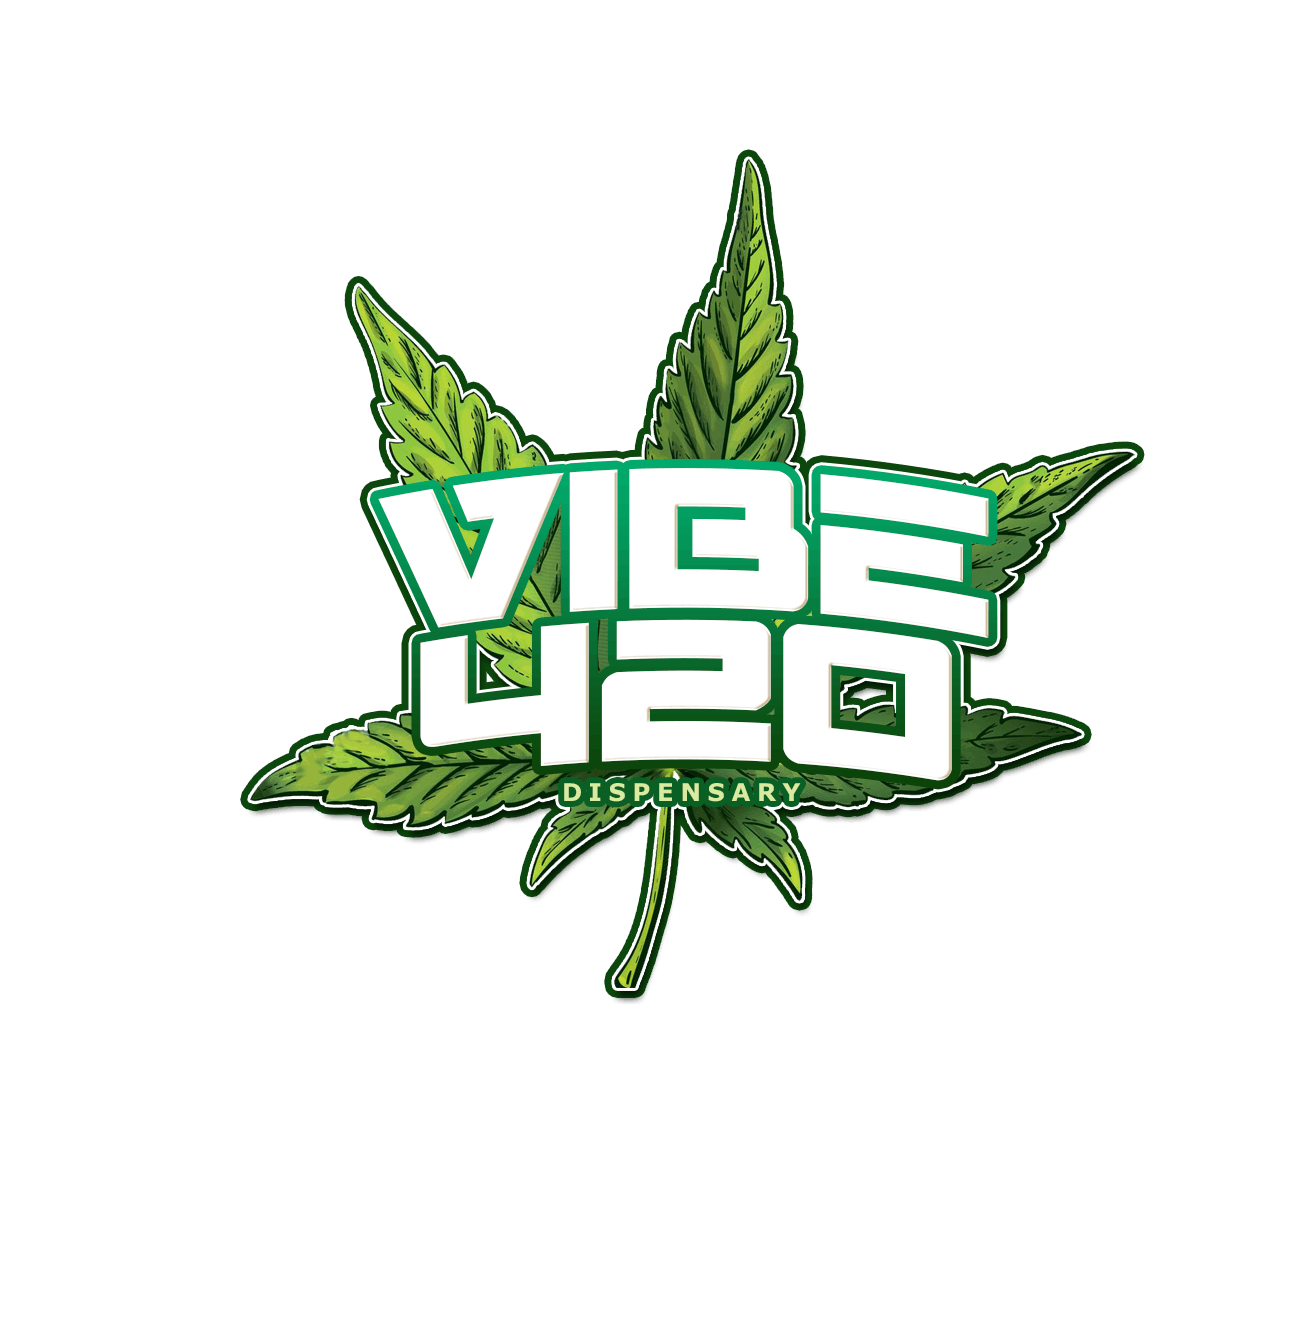 Vibe 420 Dispensary logo